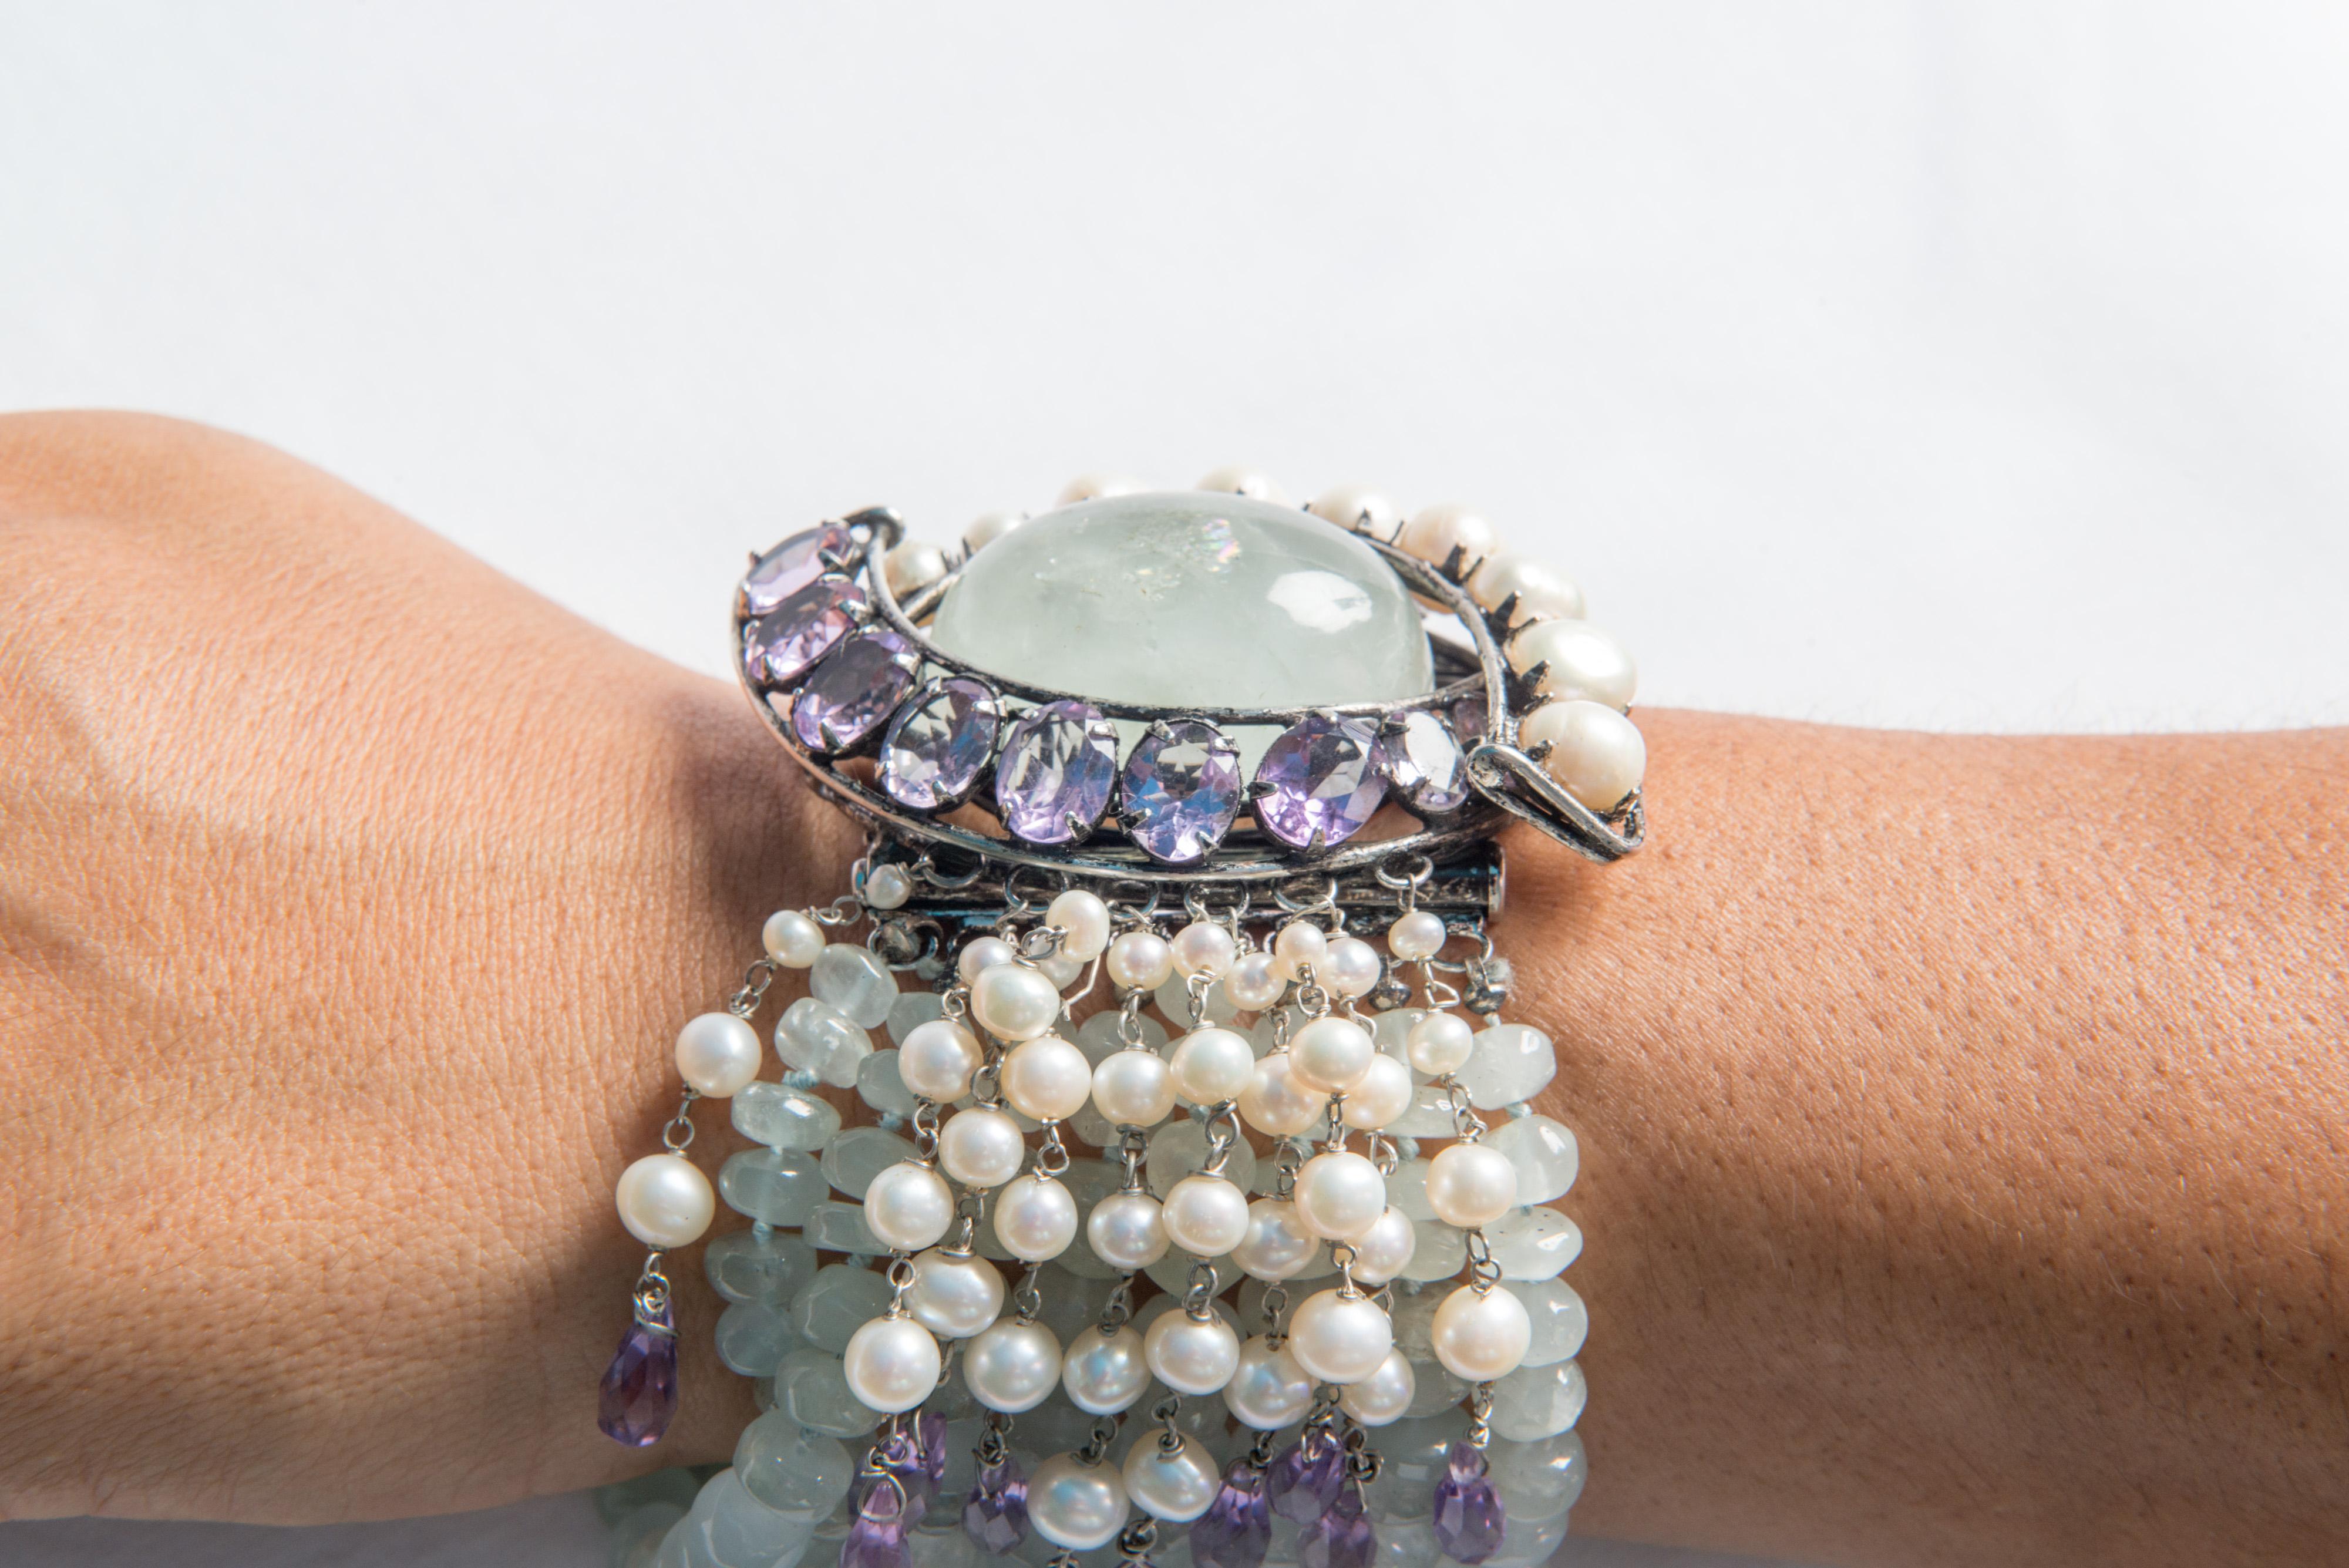 Iradj Moini light green gemstone, amethyst bracelet For Sale 4